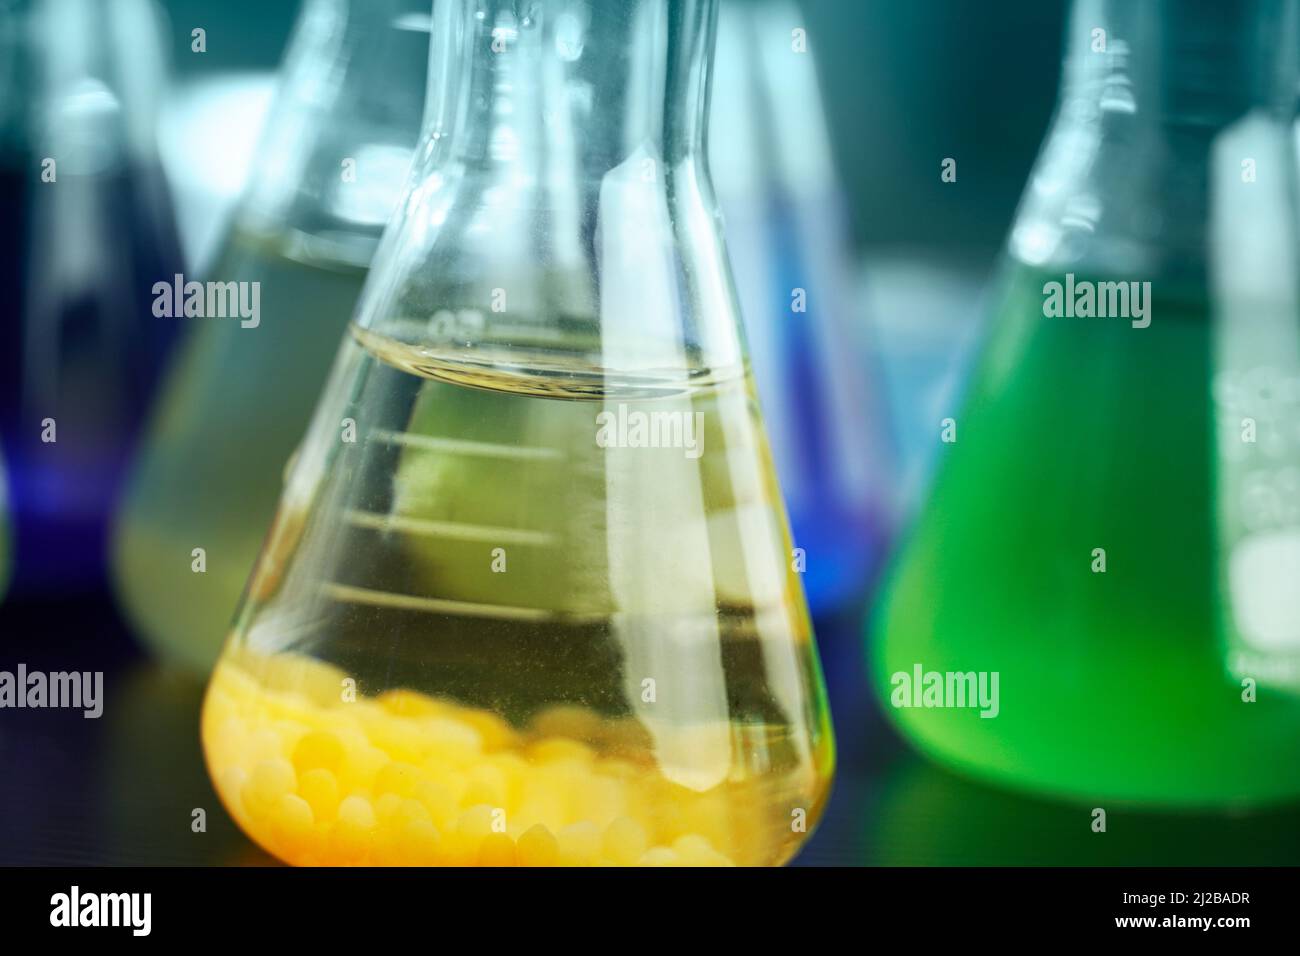 soluzione arancione e verde in matraccio di vetro scientifico presso il laboratorio di ricerca chimica Foto Stock